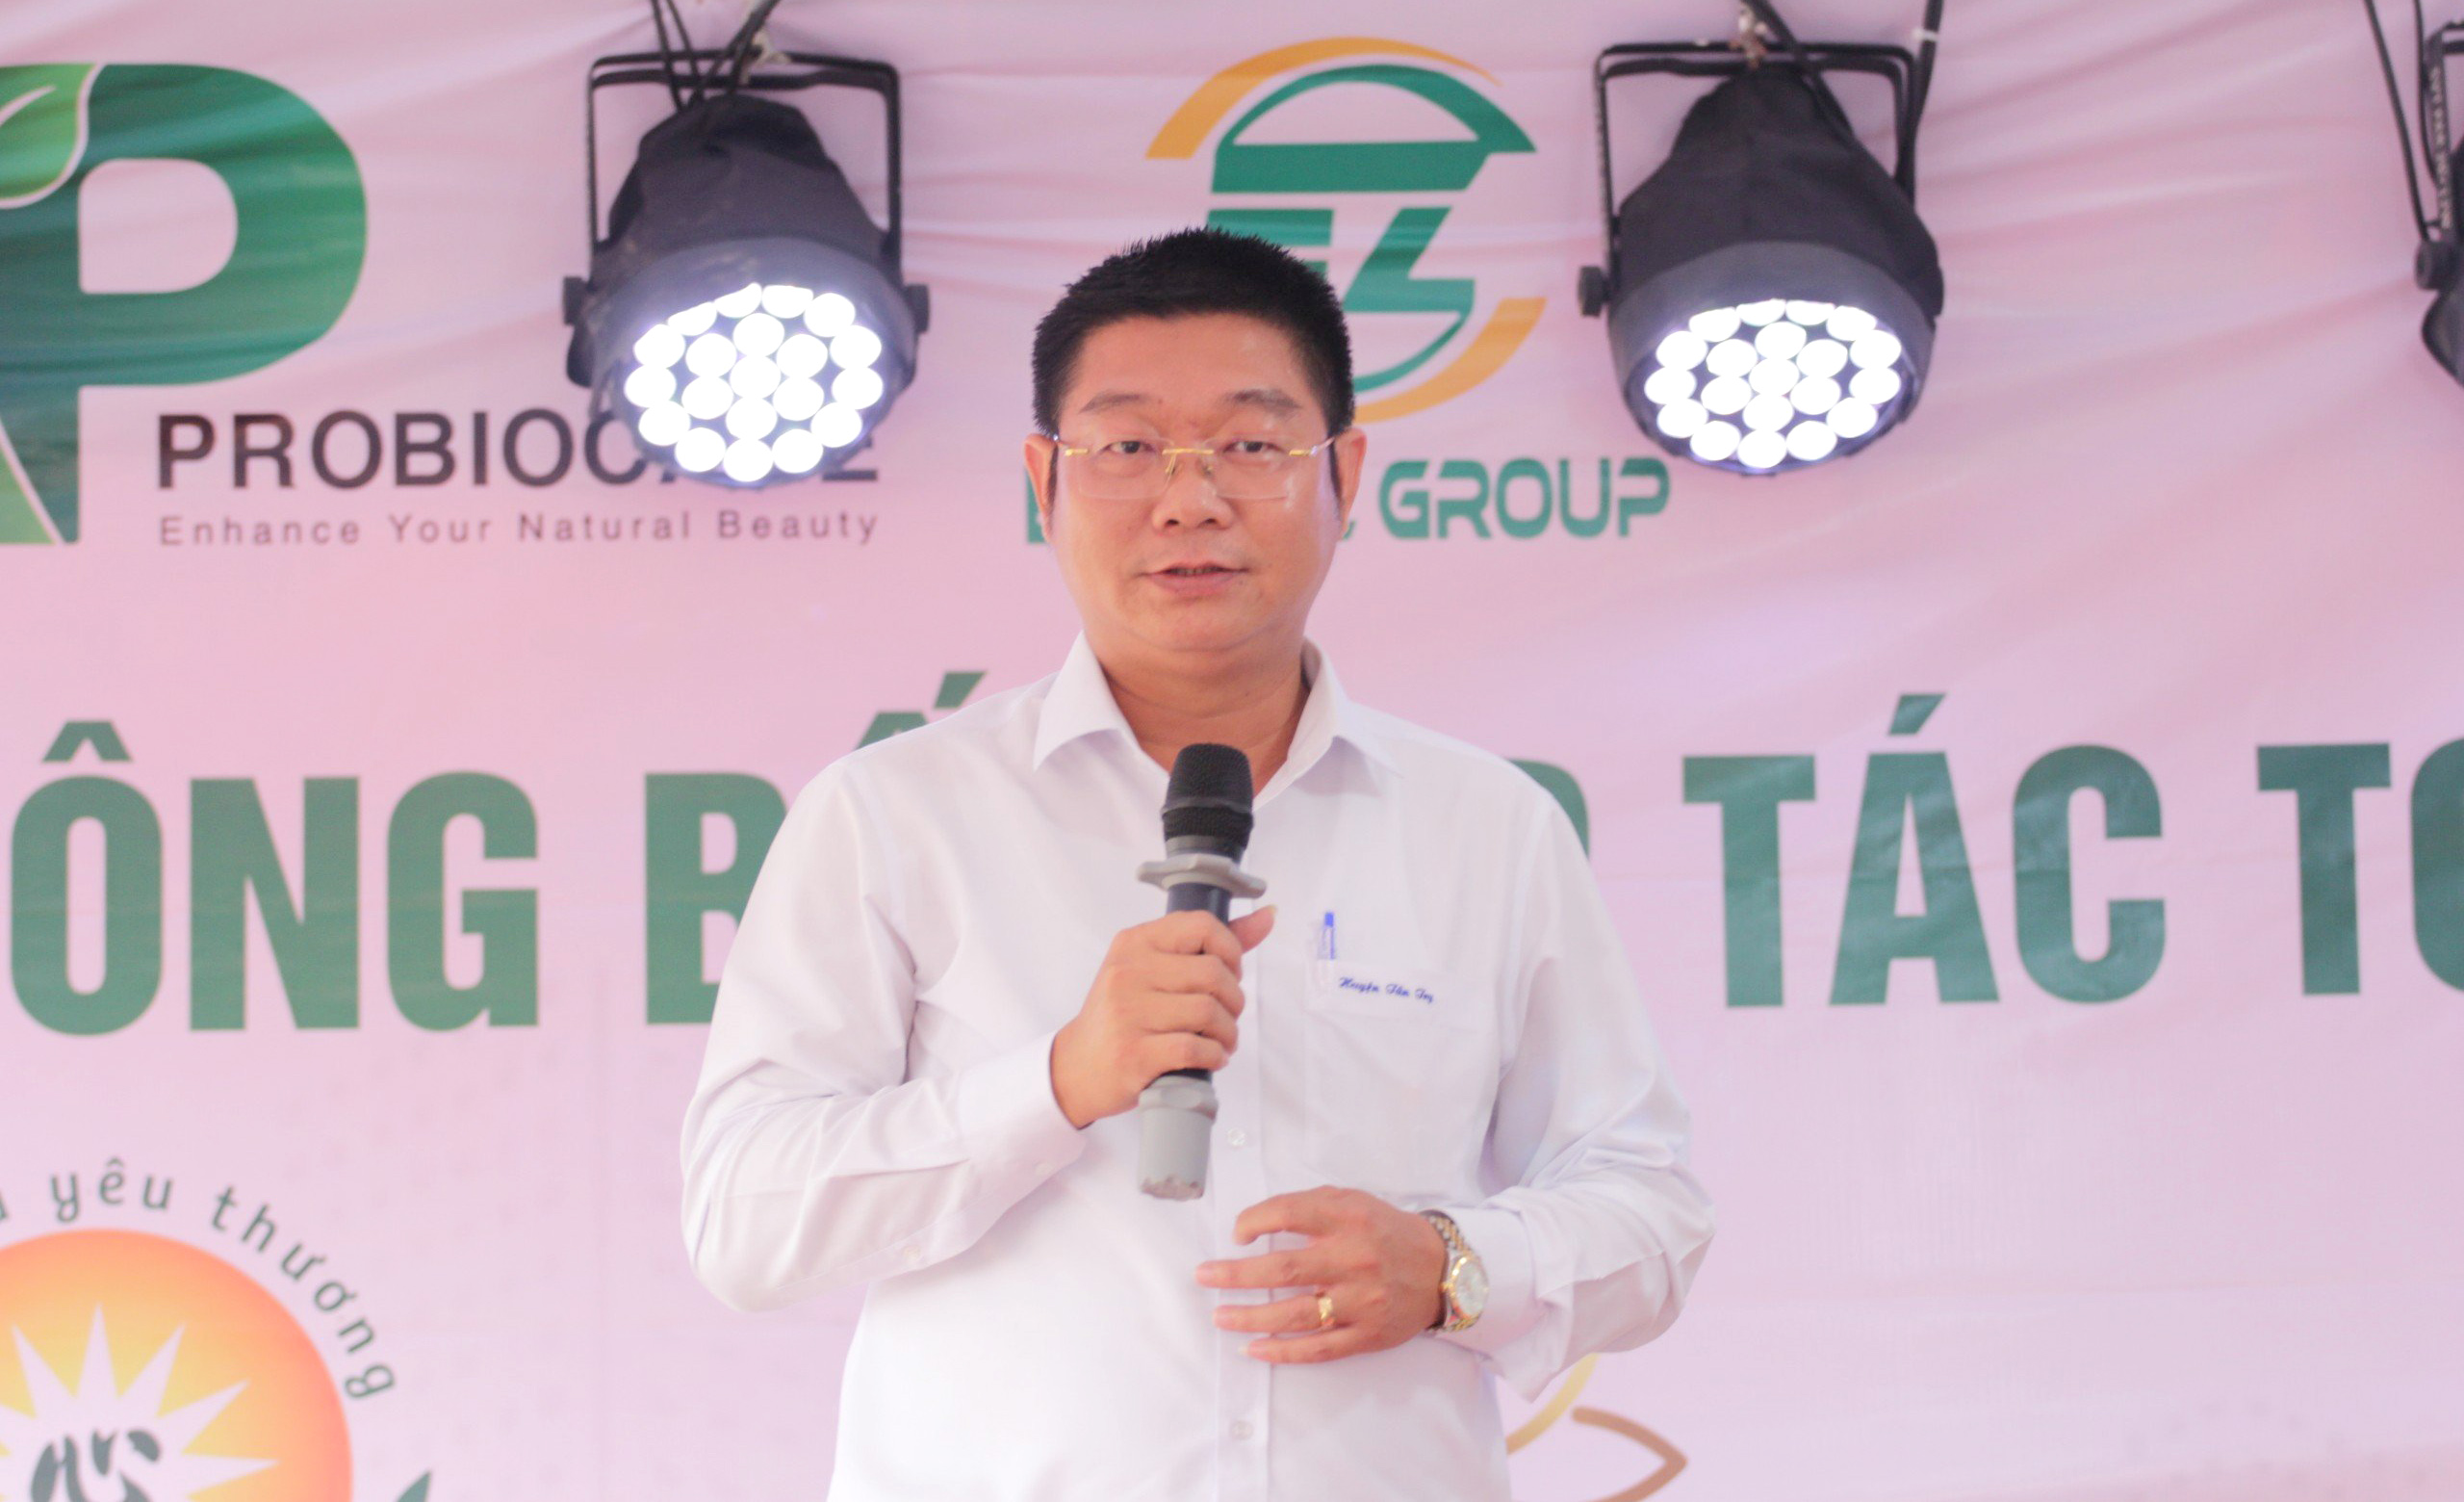 Ông Võ Trần Tuấn Thanh – Tỉnh ủy viên, Bí thư Huyện uỷ huyện Tân Trụ phát biểu chúc mừng Công ty Cổ phần Probiocare tại buổi lễ.